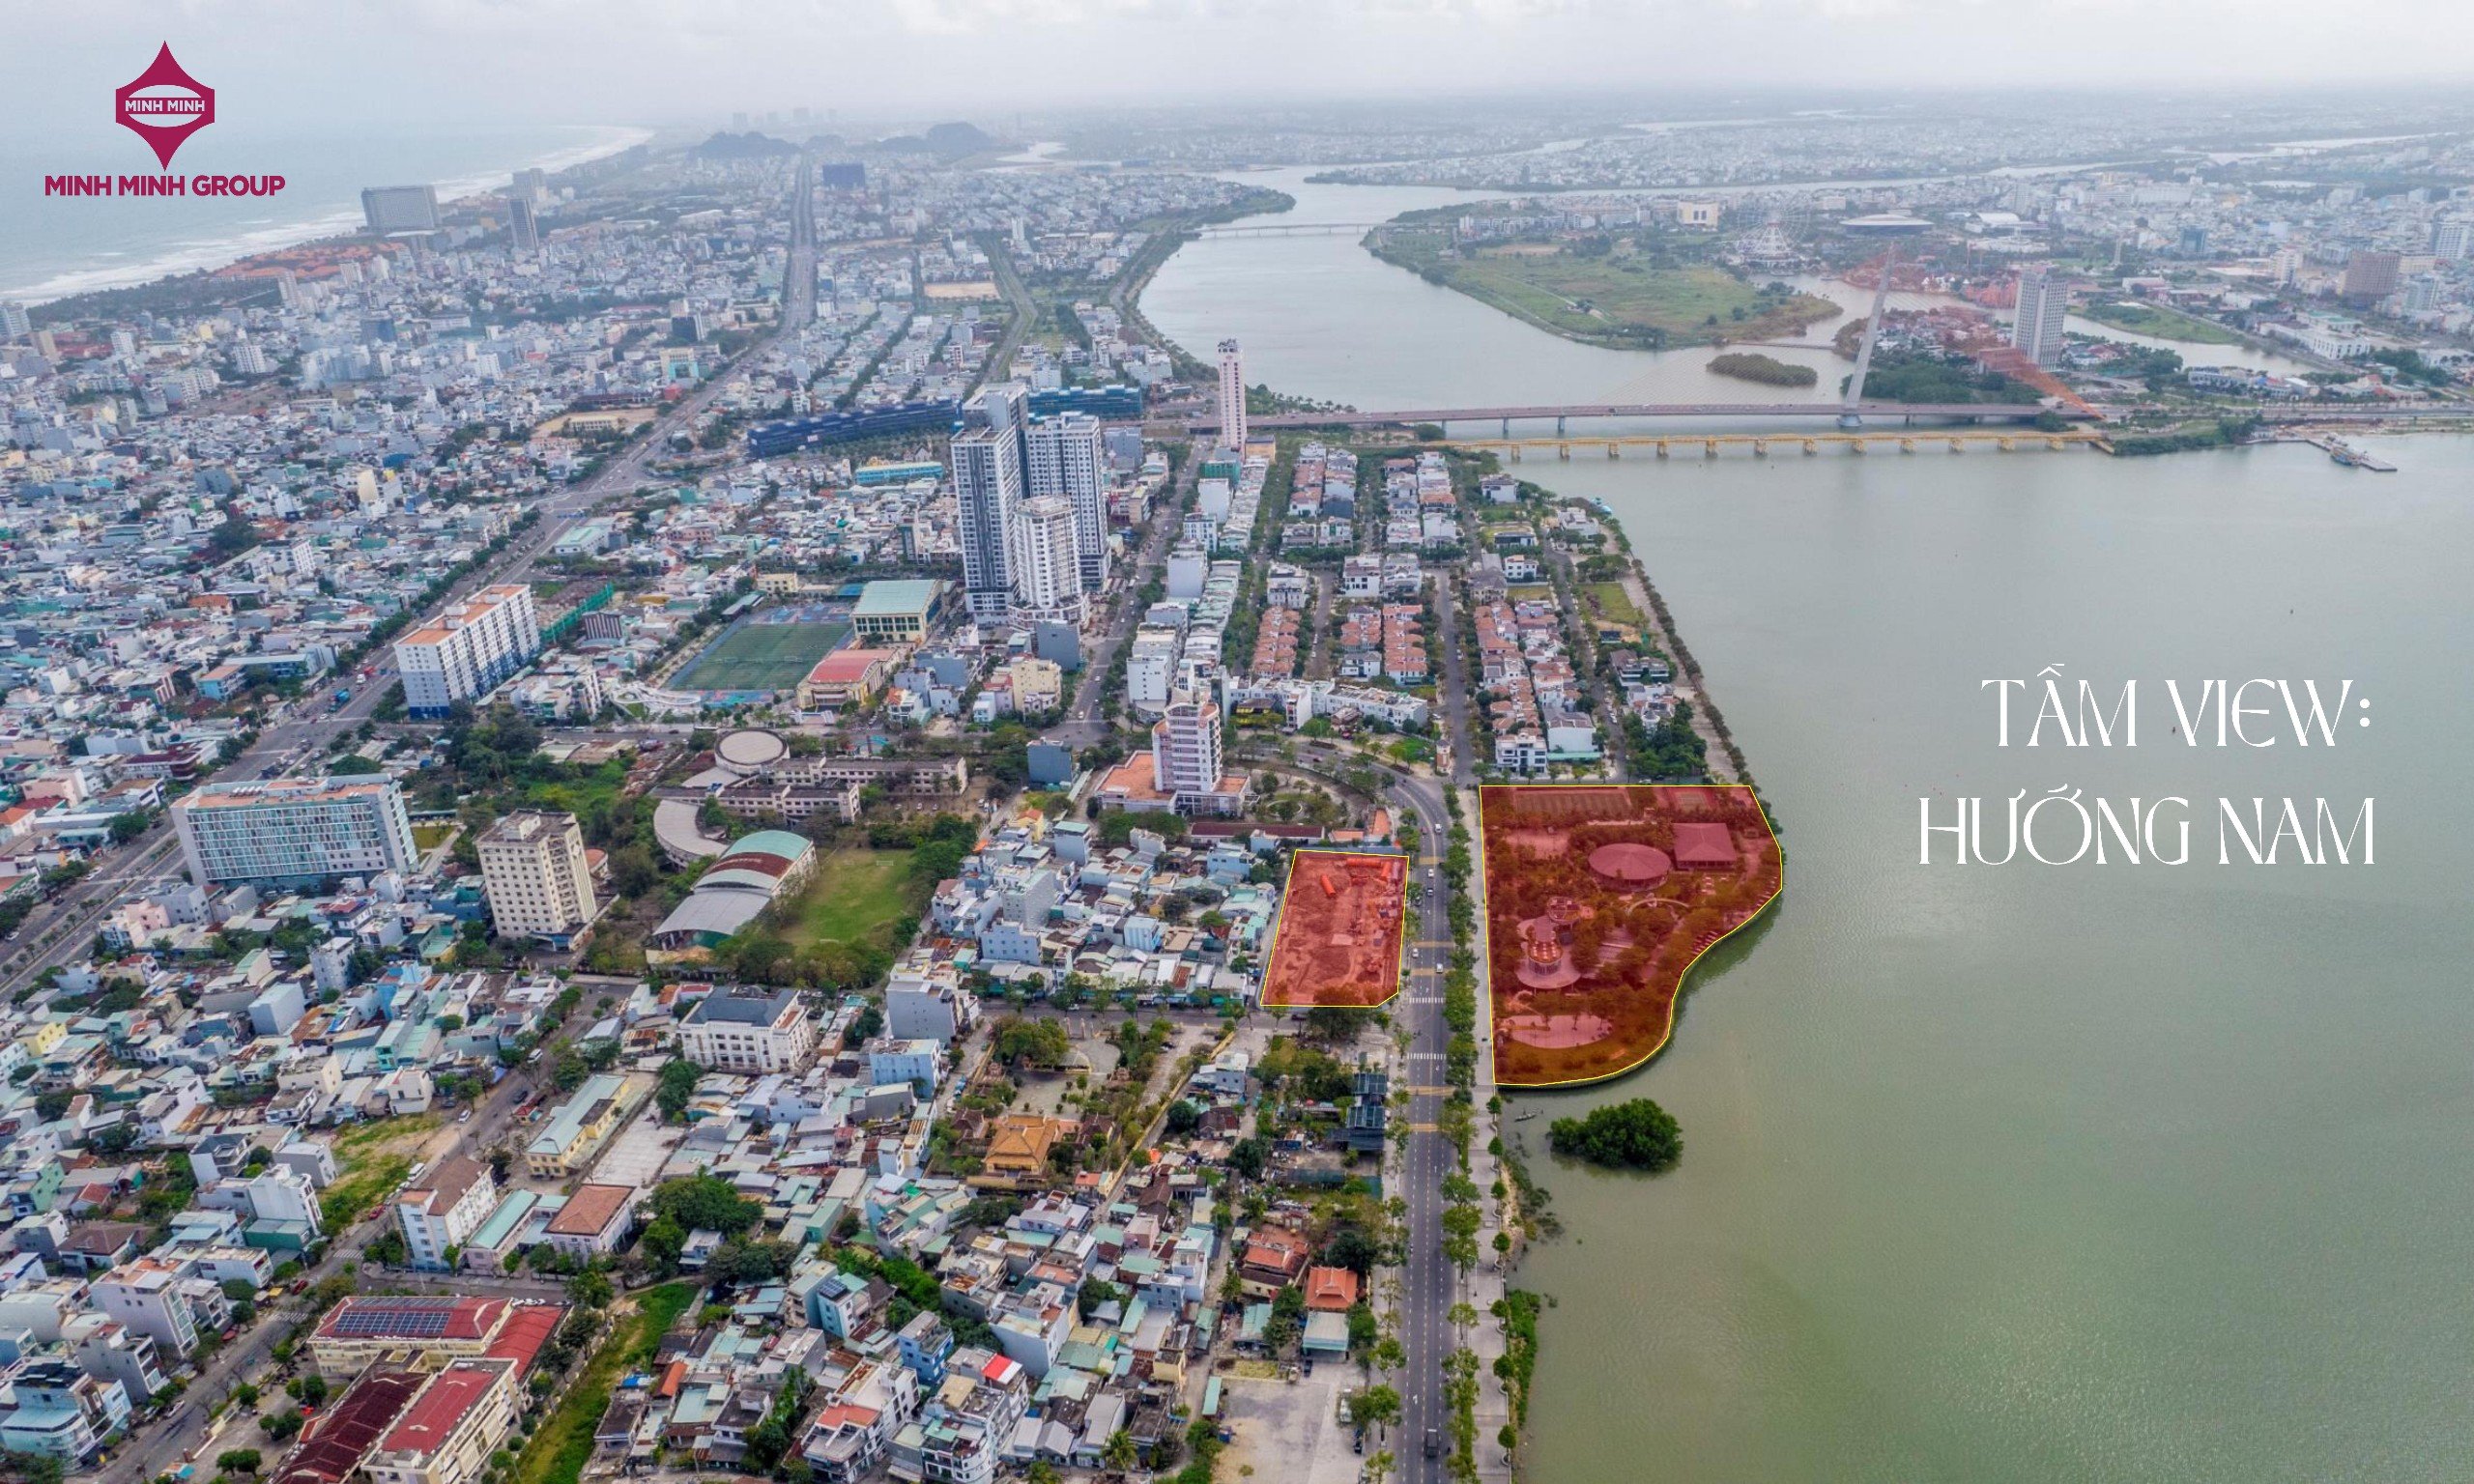 Sở hữu căn hộ tiêu chuẩn 5 sao ngay trung tâm Đà Nẵng view sông, ngắm cầu Rồng chỉ từ 580 triệu đồng - Ảnh 3